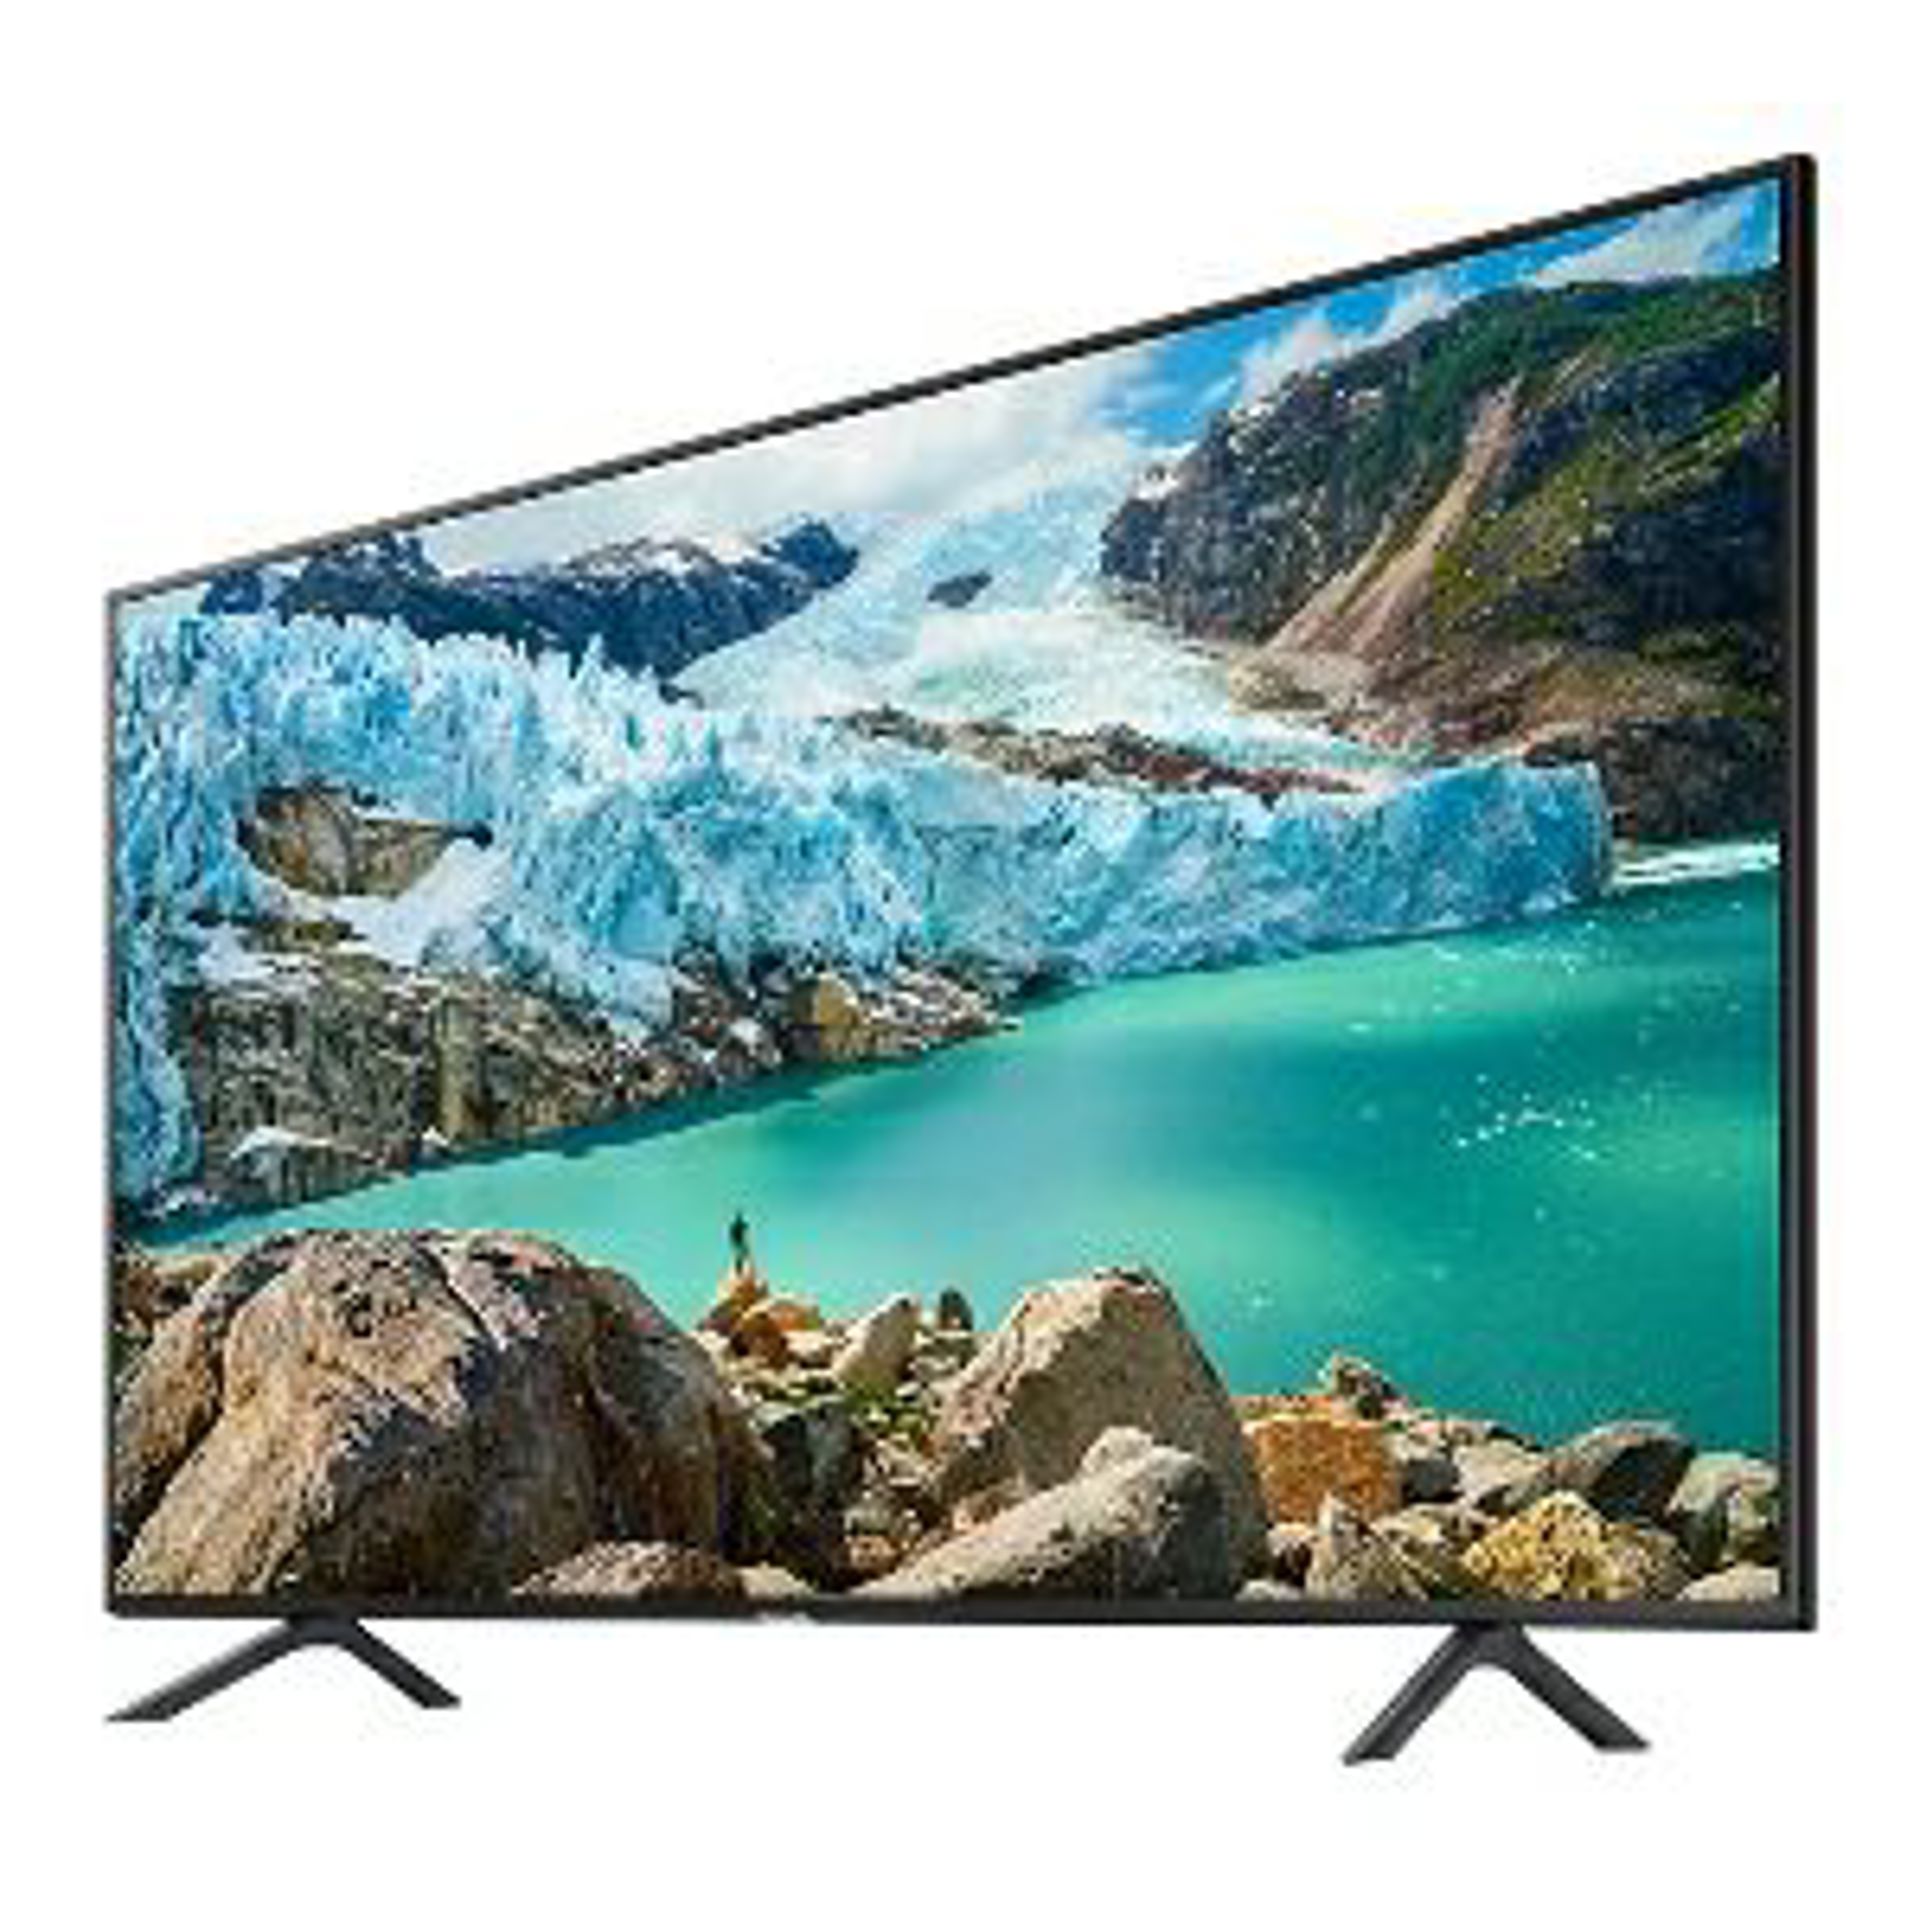 Samsung UHD TV 2019 RU7100 i Q60R 4K Smart QLED TV 2019 - novi modeli televizora